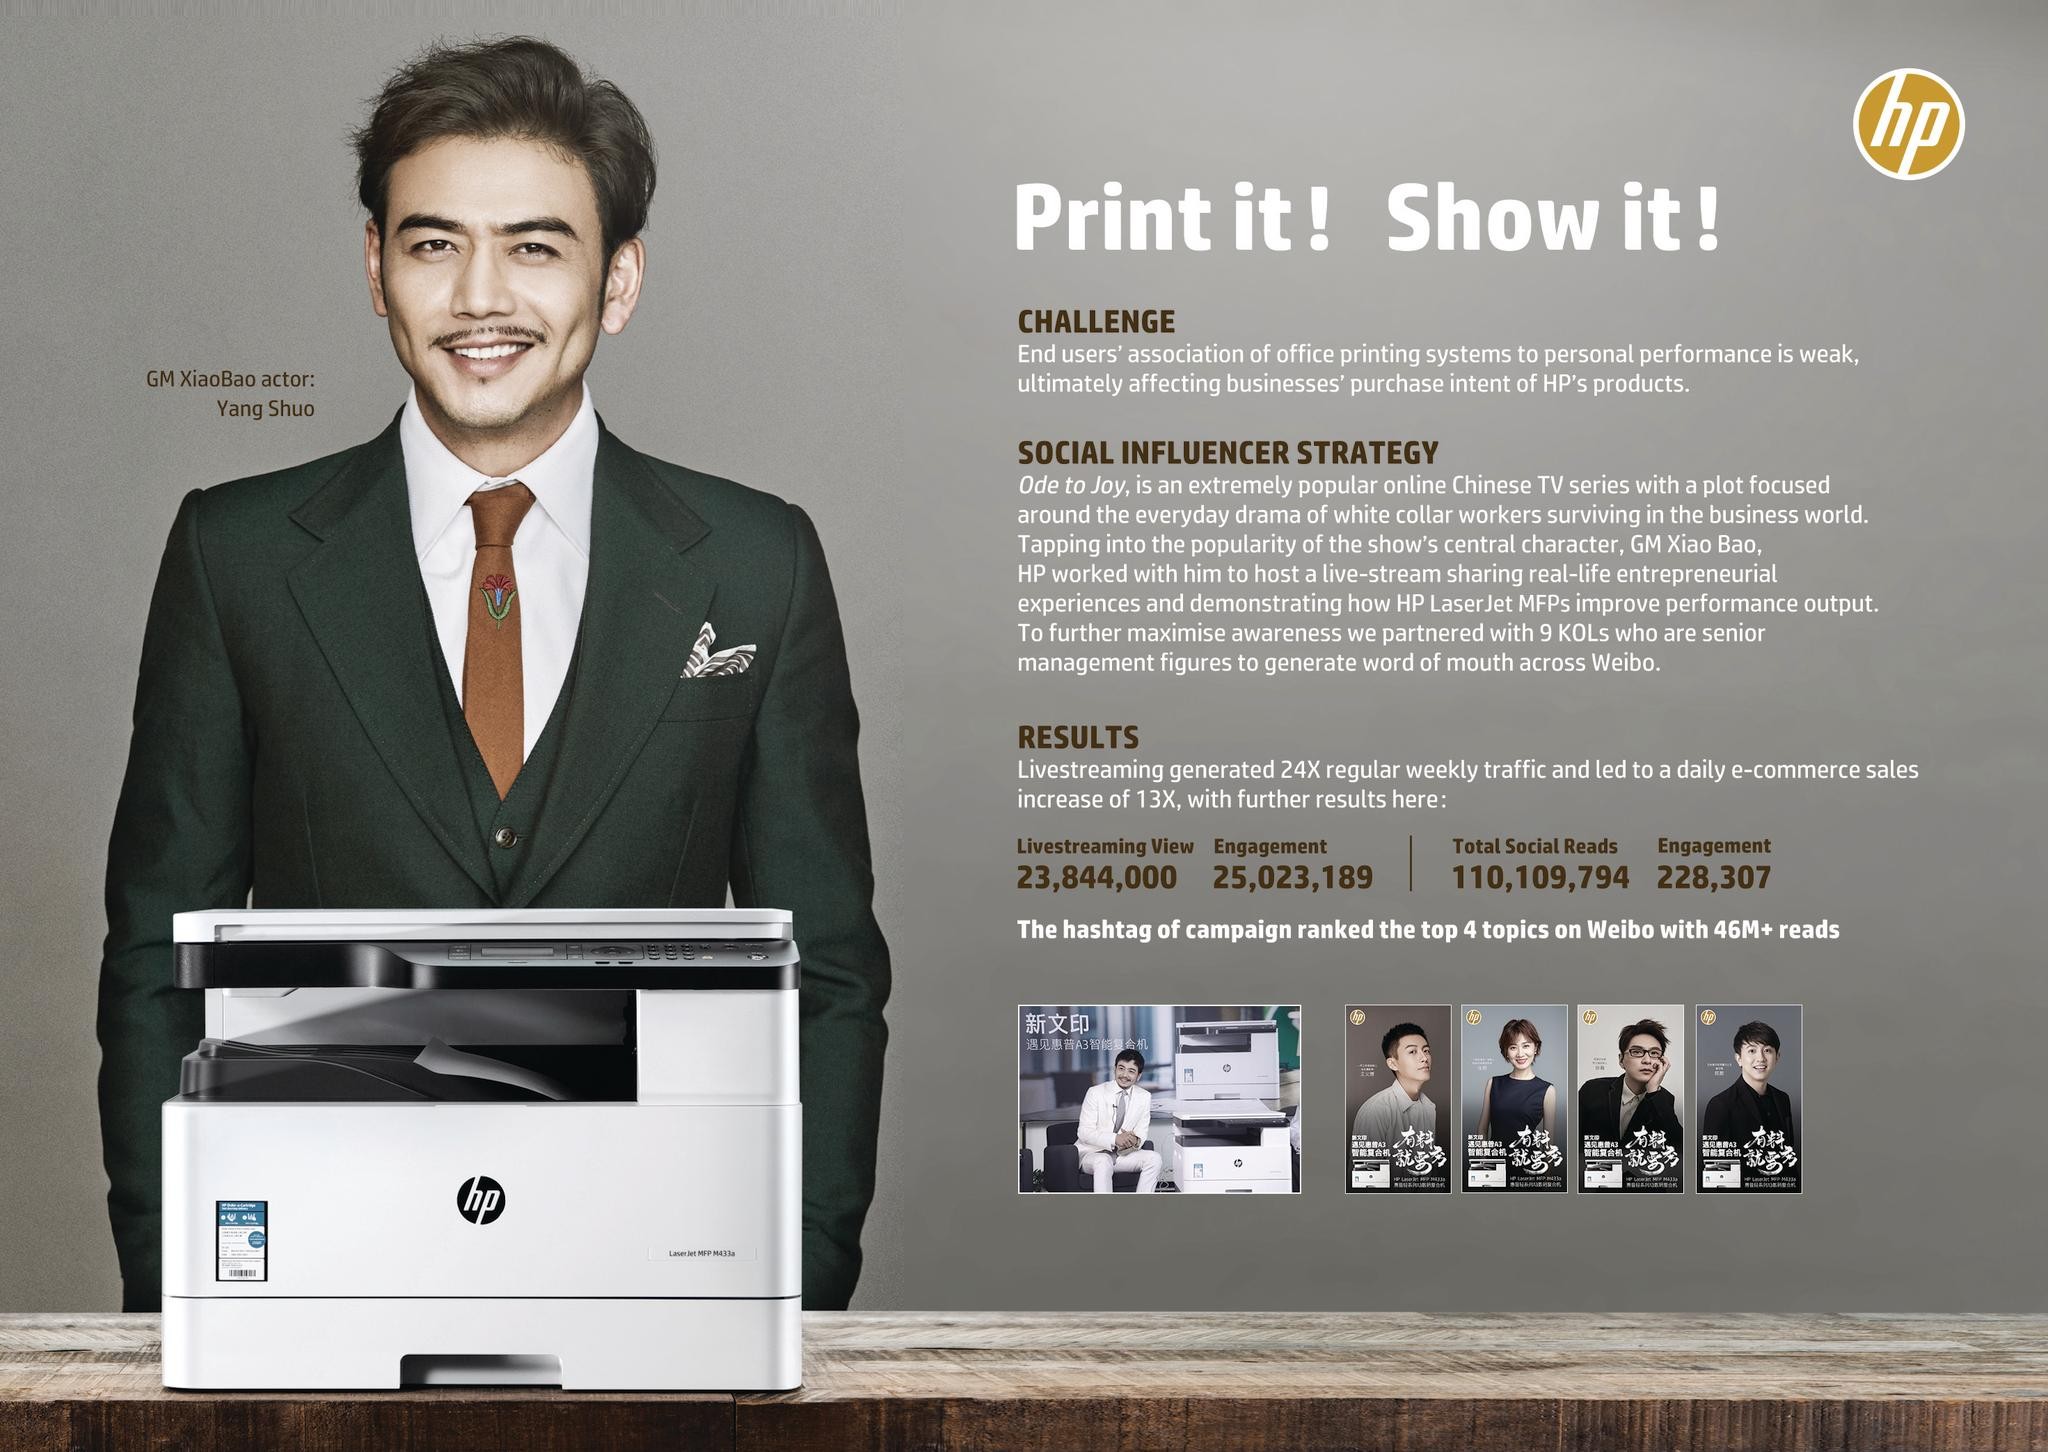 HP Print it! Show it!